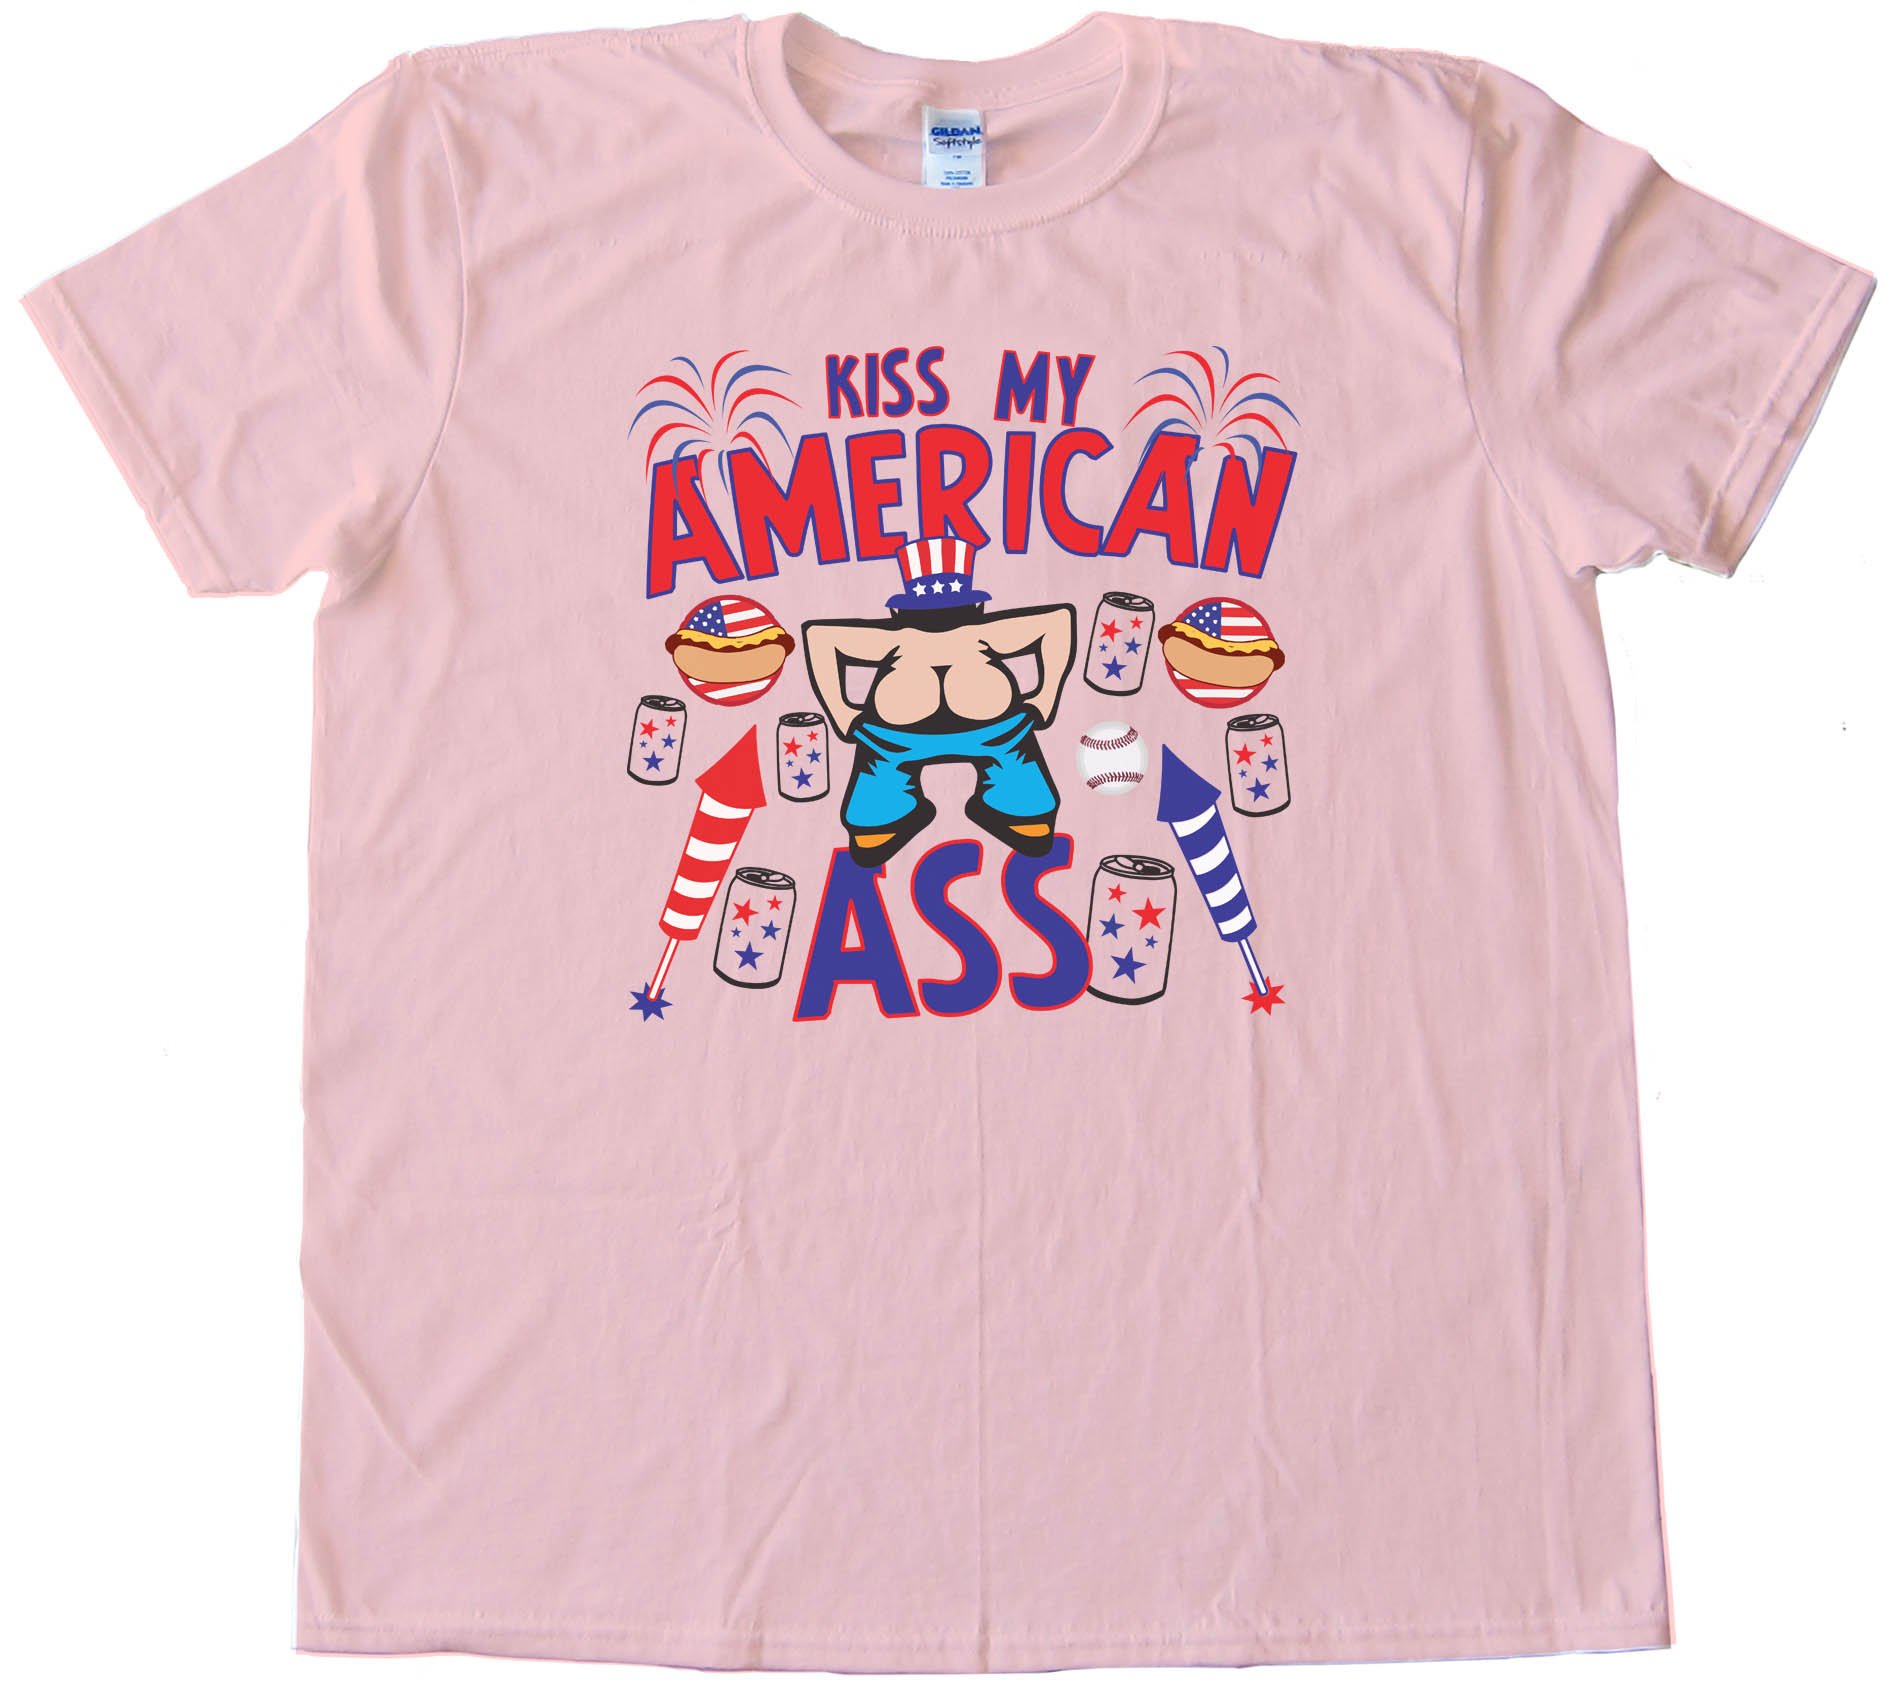 Kiss My American Ass - Tee Shirt